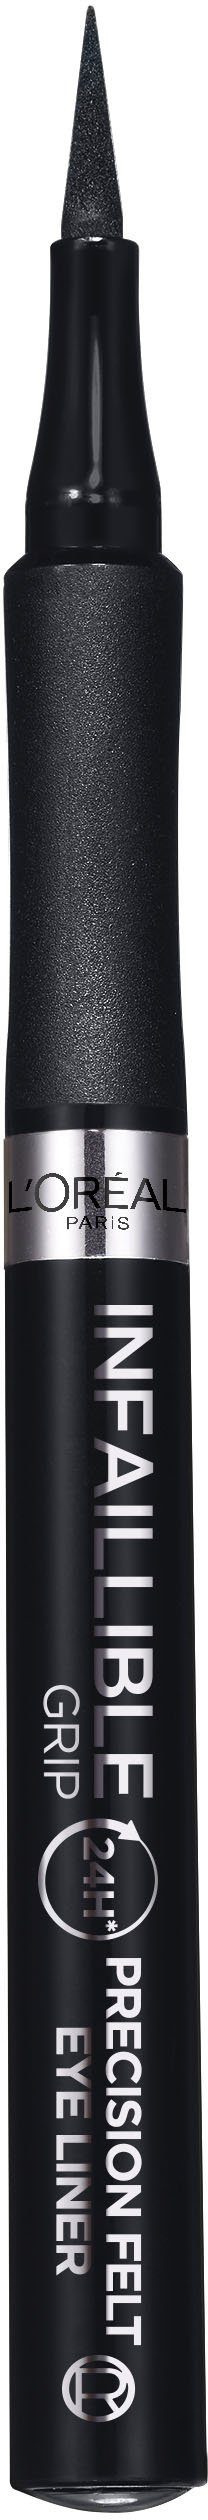 Felt Infaillible Precision L'ORÉAL 1 PARIS schwarz Liner Eyeliner